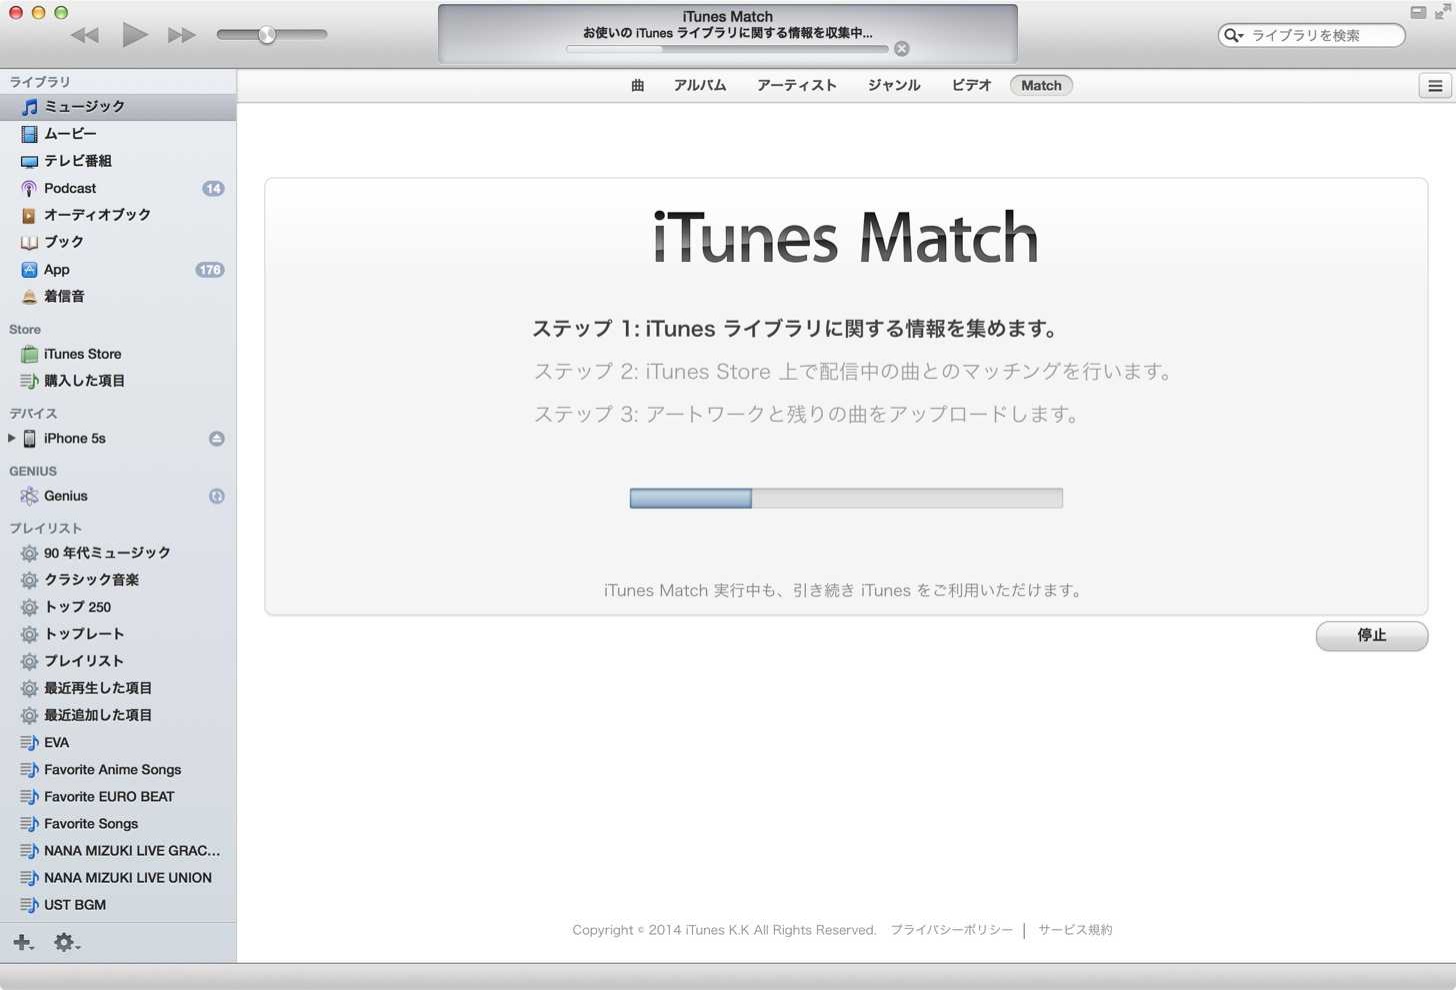 iTunesライブラリに関する情報を集めます。